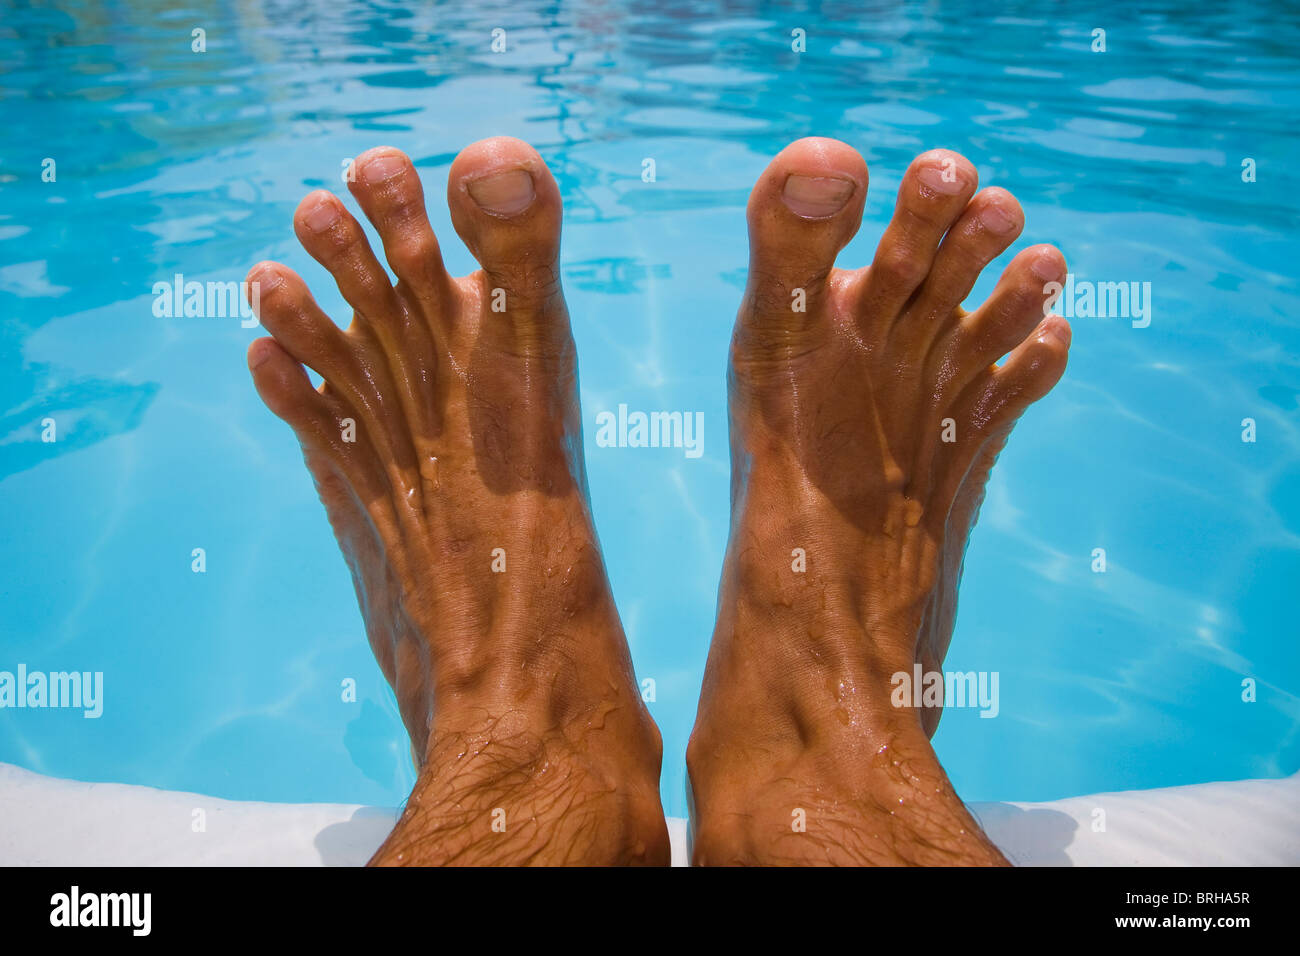 A los pies del hombre por una piscina azul Foto de stock